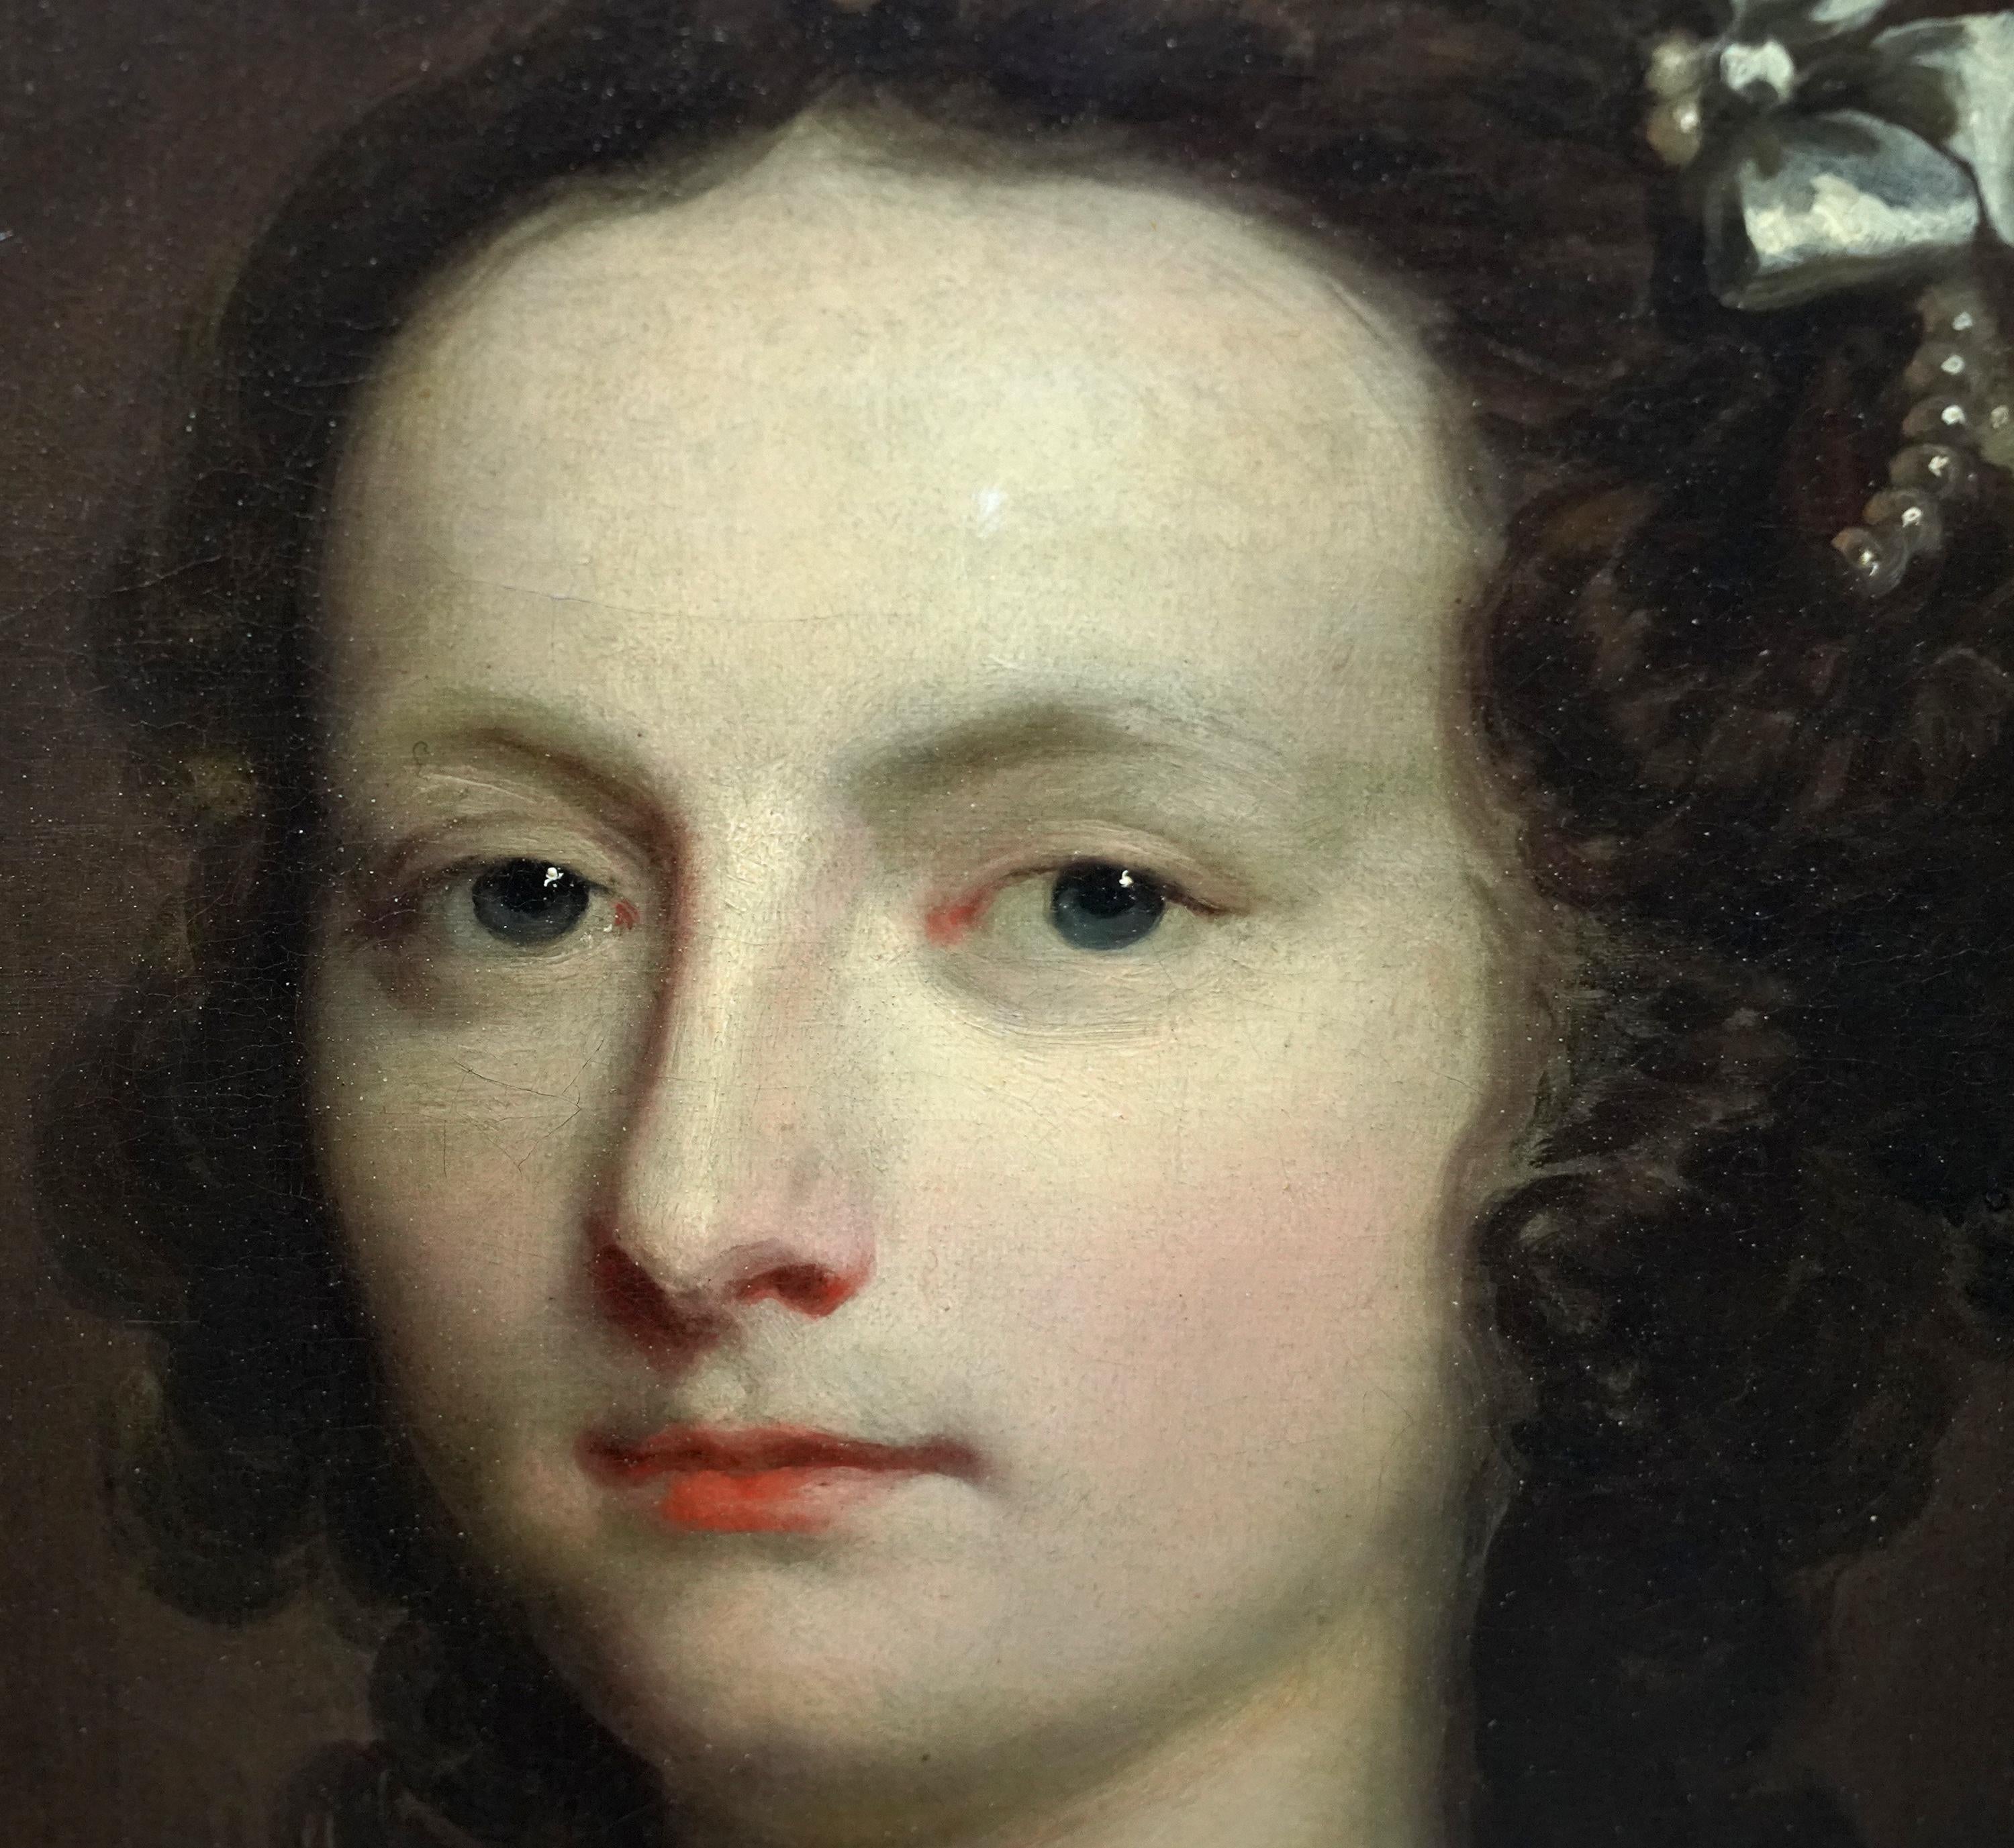 Ce magnifique portrait à l'huile de maître ancien britannique du XVIIIe siècle est l'œuvre de l'artiste renommé Joseph Highmore. Peint vers 1740, il s'agit d'un portrait à mi-corps d'une jeune femme, Elizabeth Banks. Elle est vêtue d'une robe en